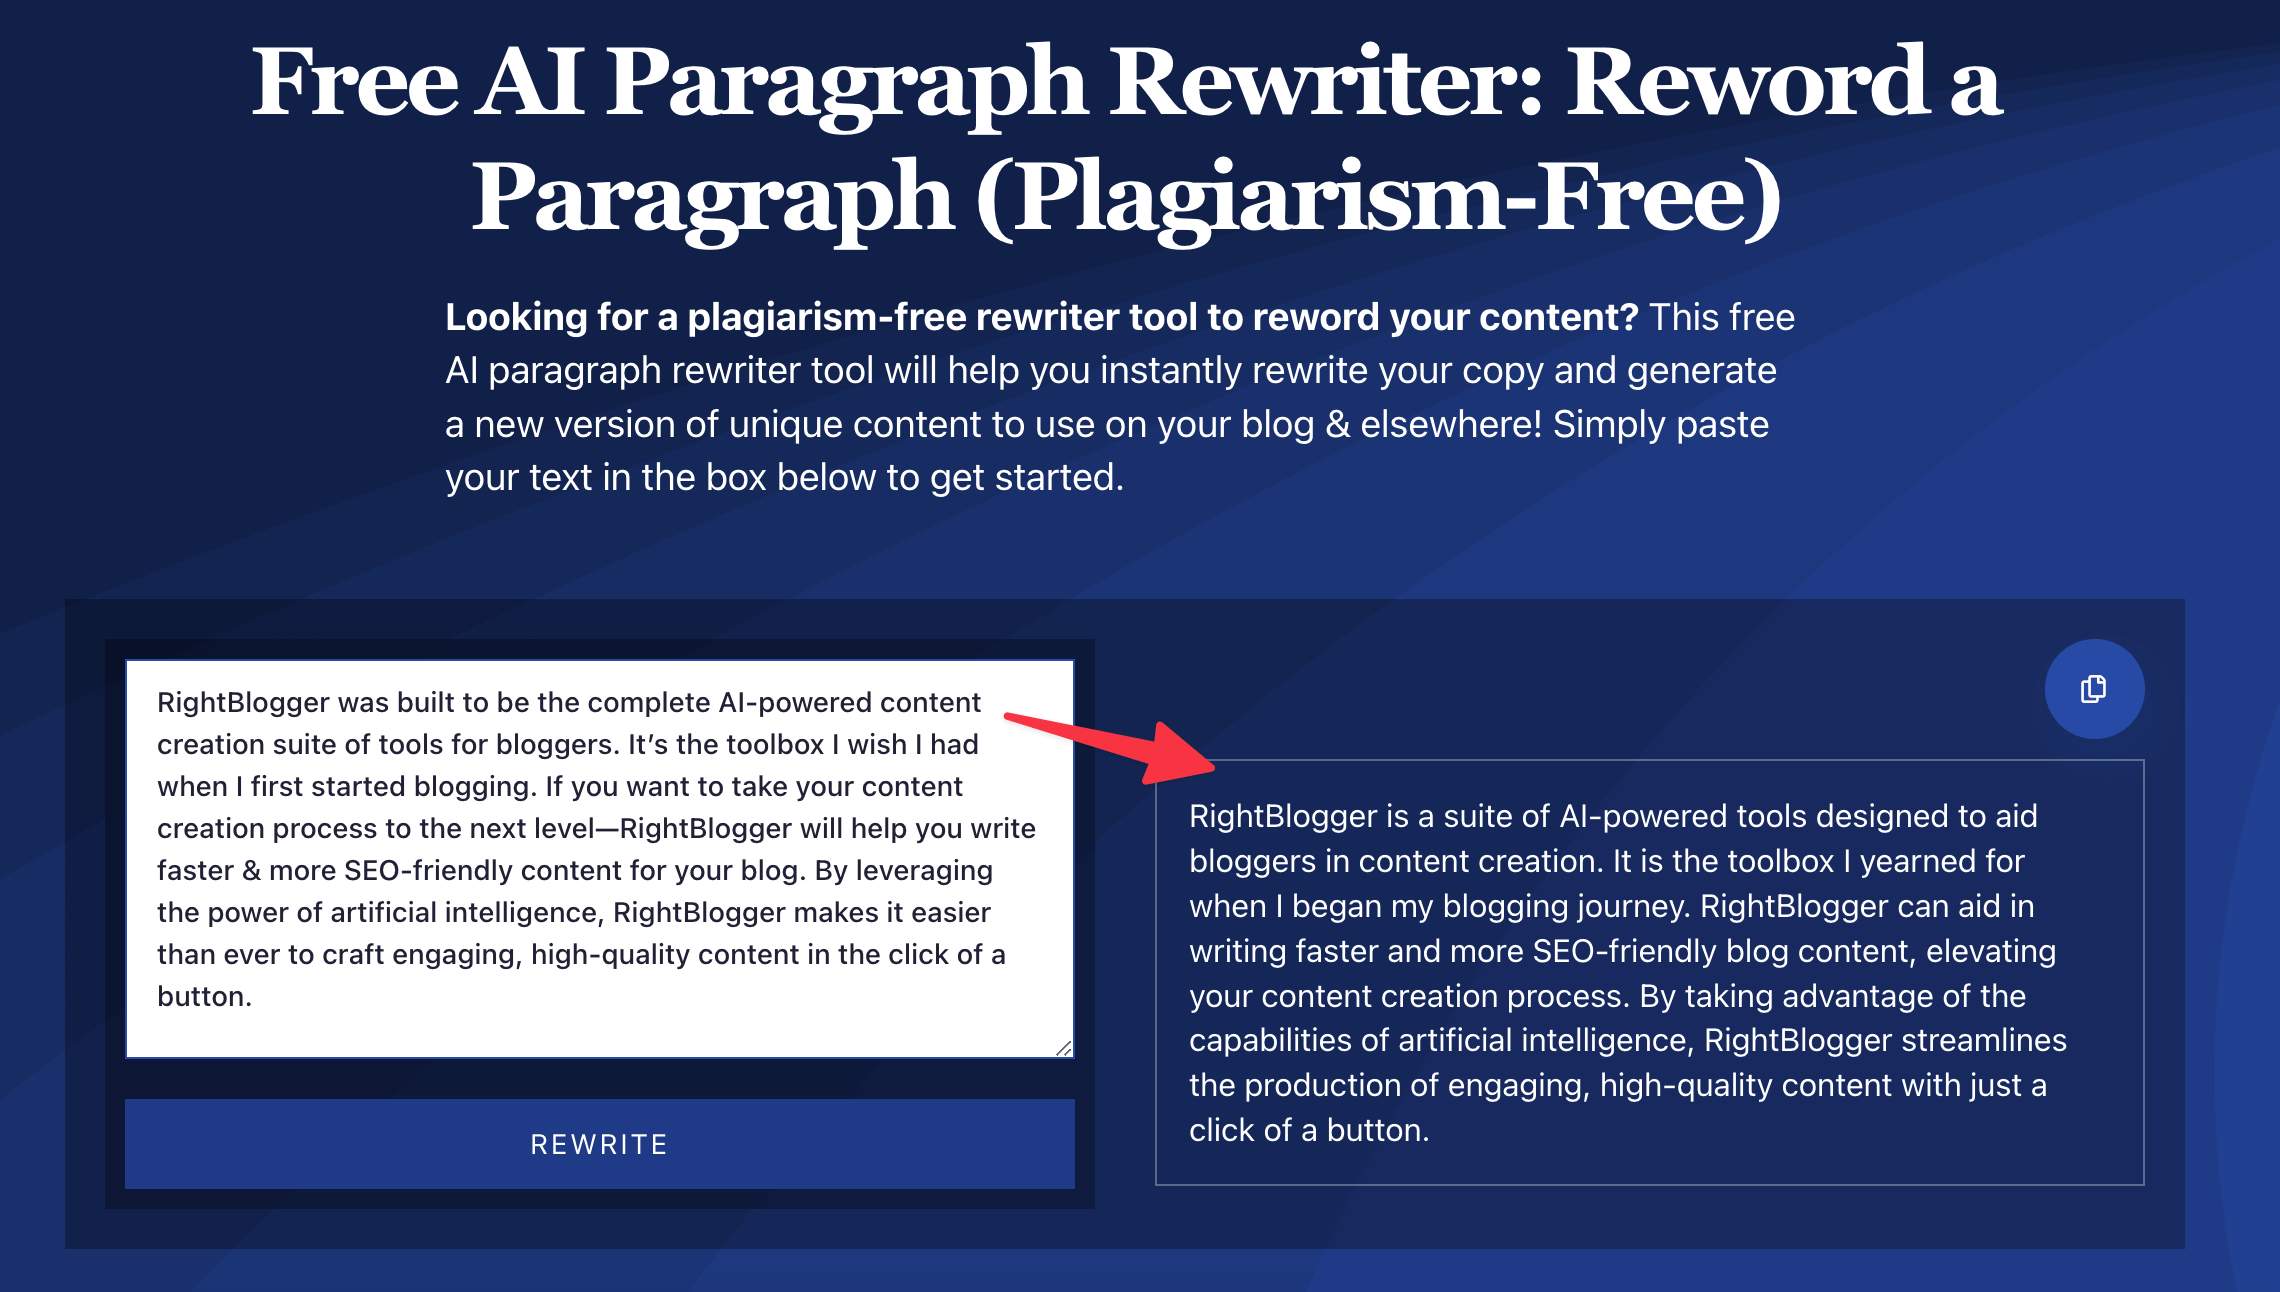 no plagiarism essay rewriter